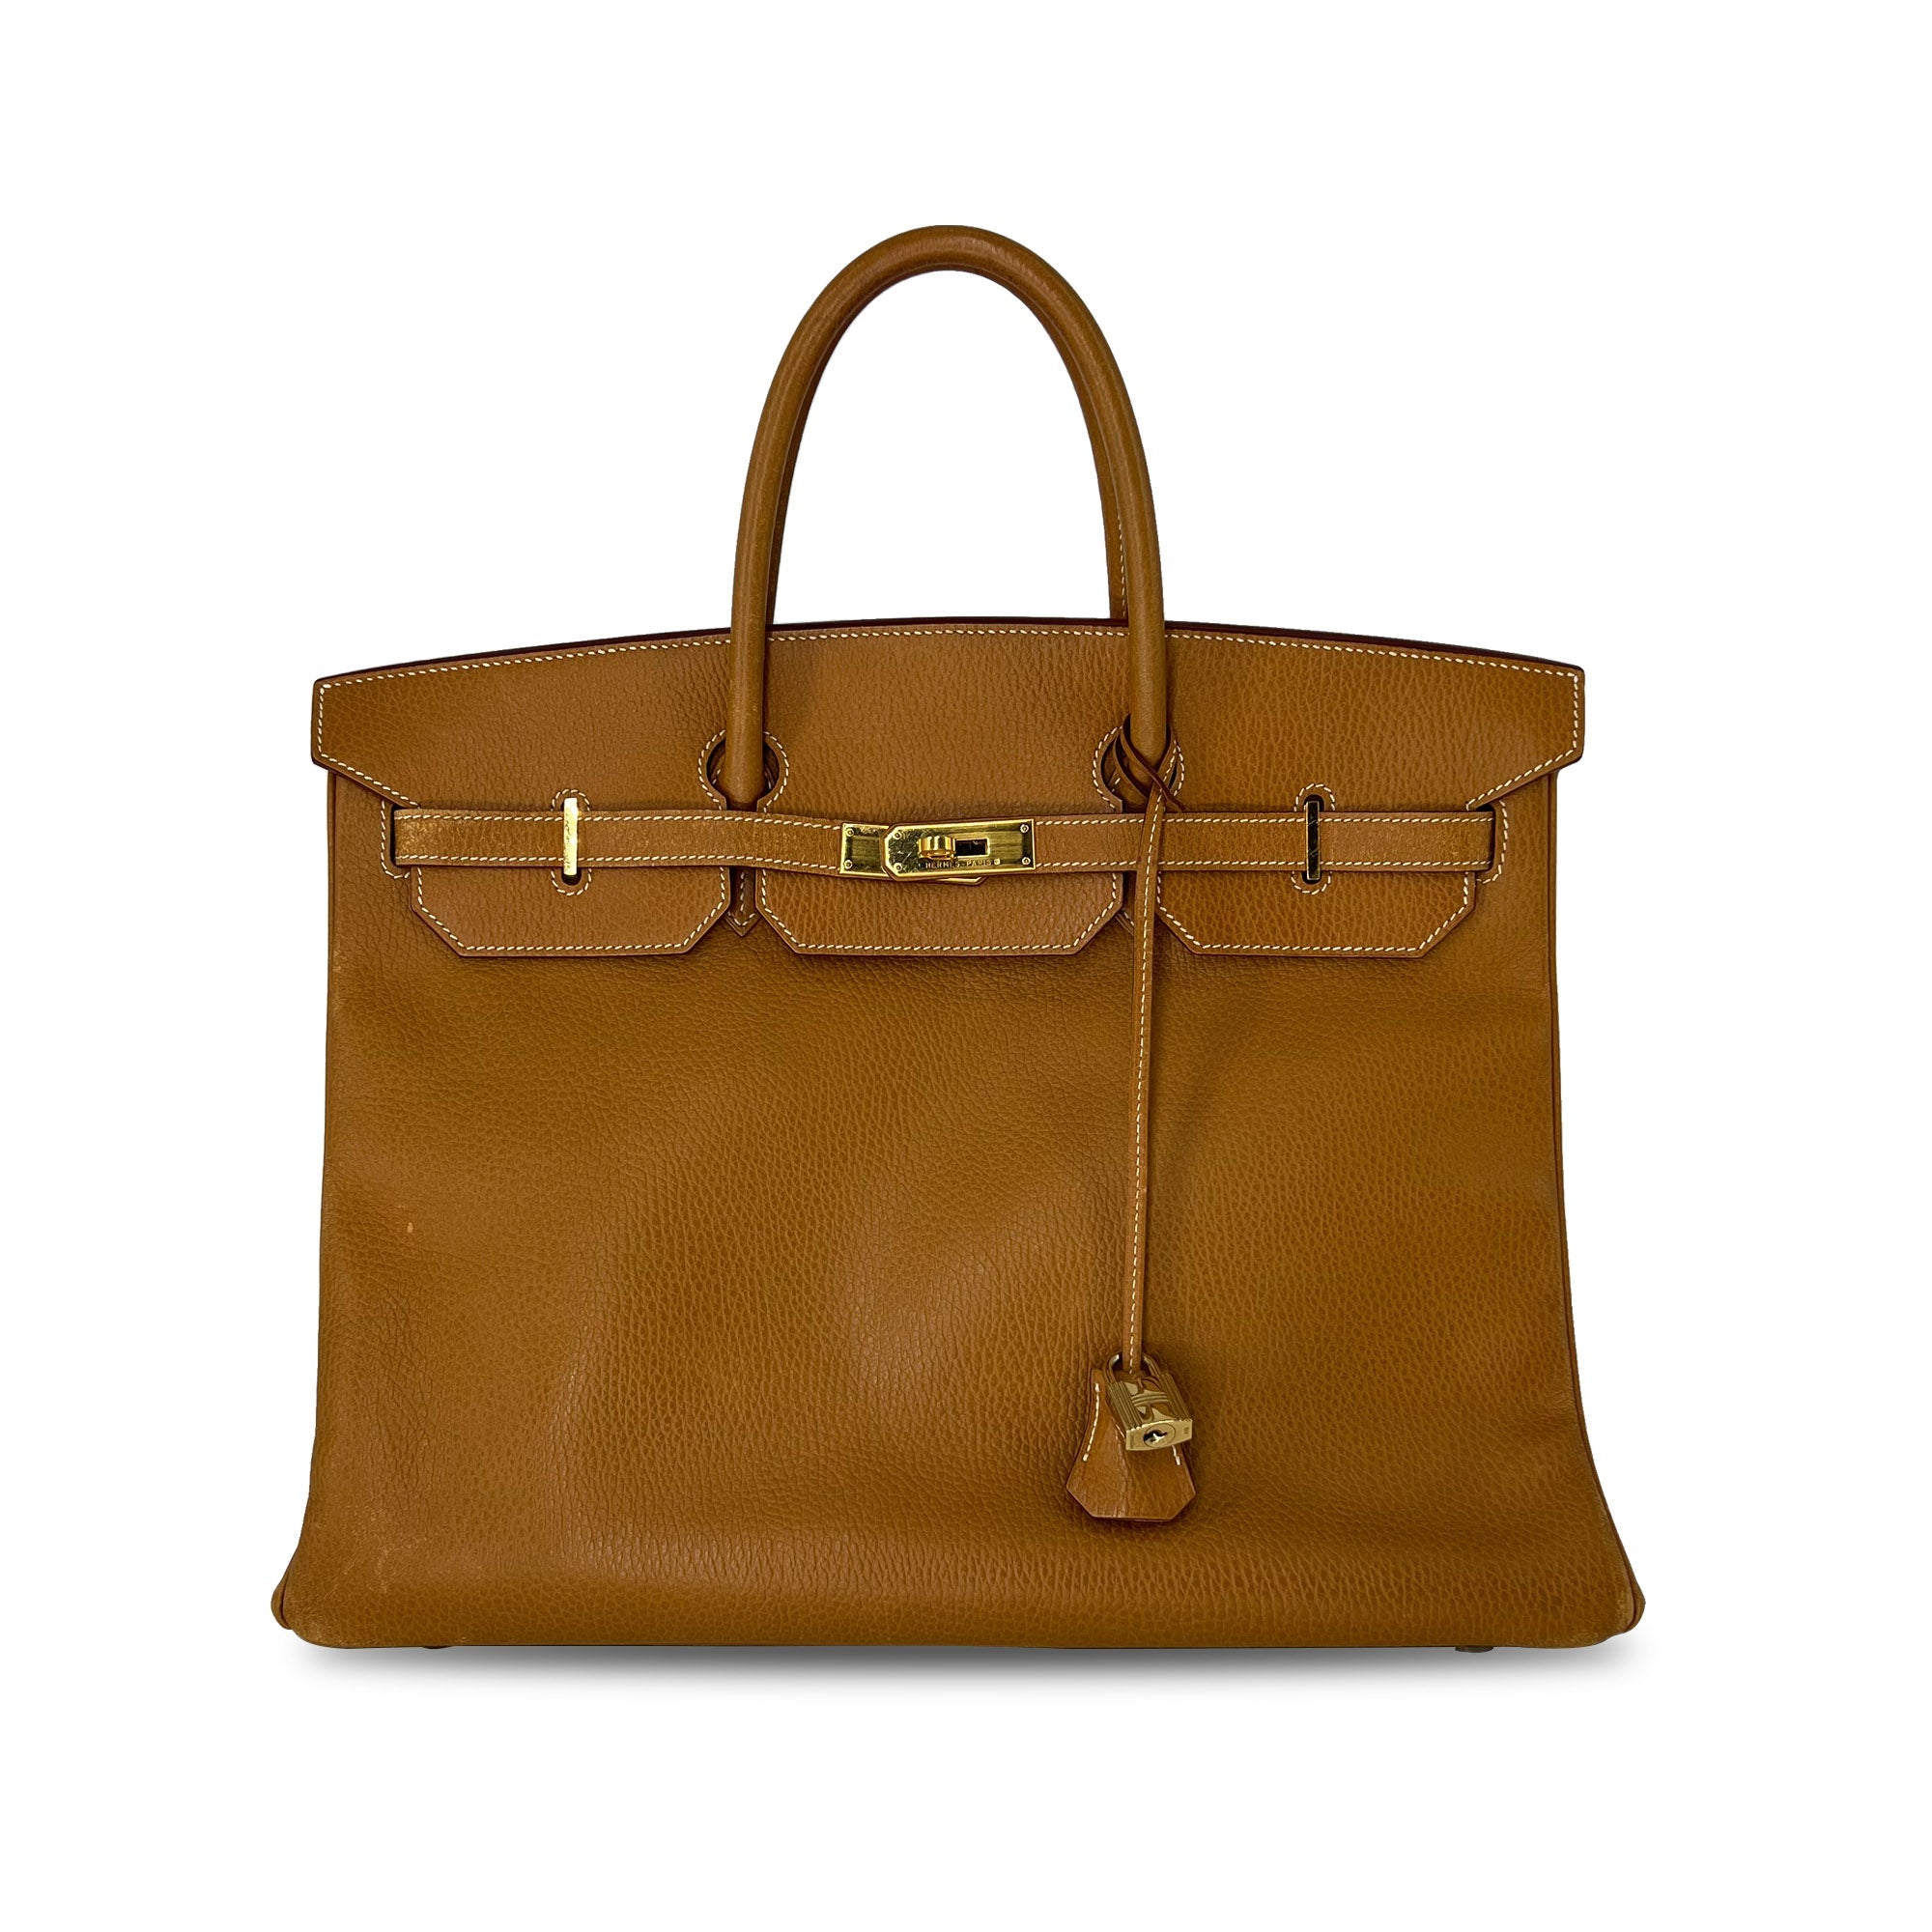 Top Quality Vintage Hermes Birkin B40 GHW Clemence Leather designer bag